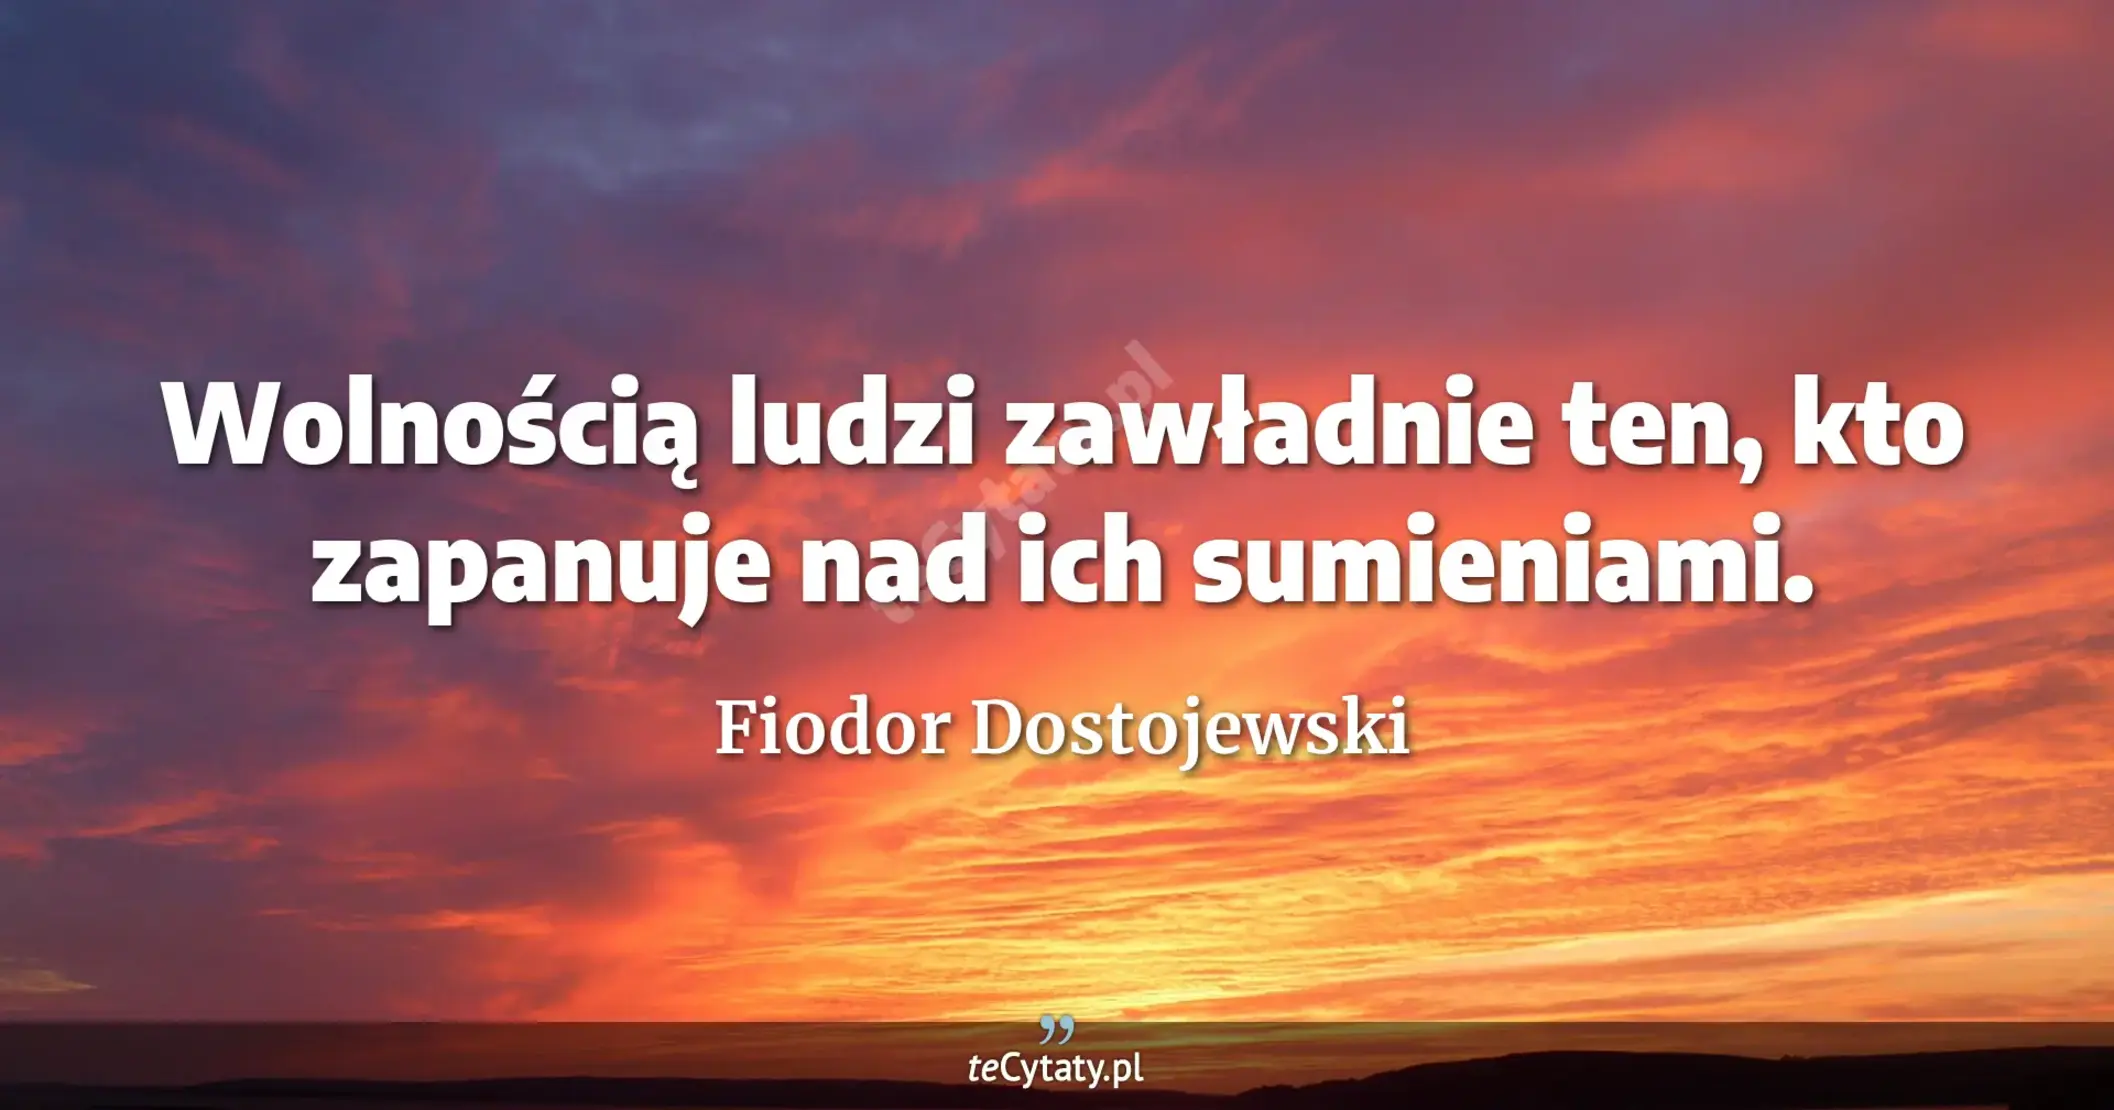 Wolnością ludzi zawładnie ten, kto zapanuje nad ich sumieniami. - Fiodor Dostojewski